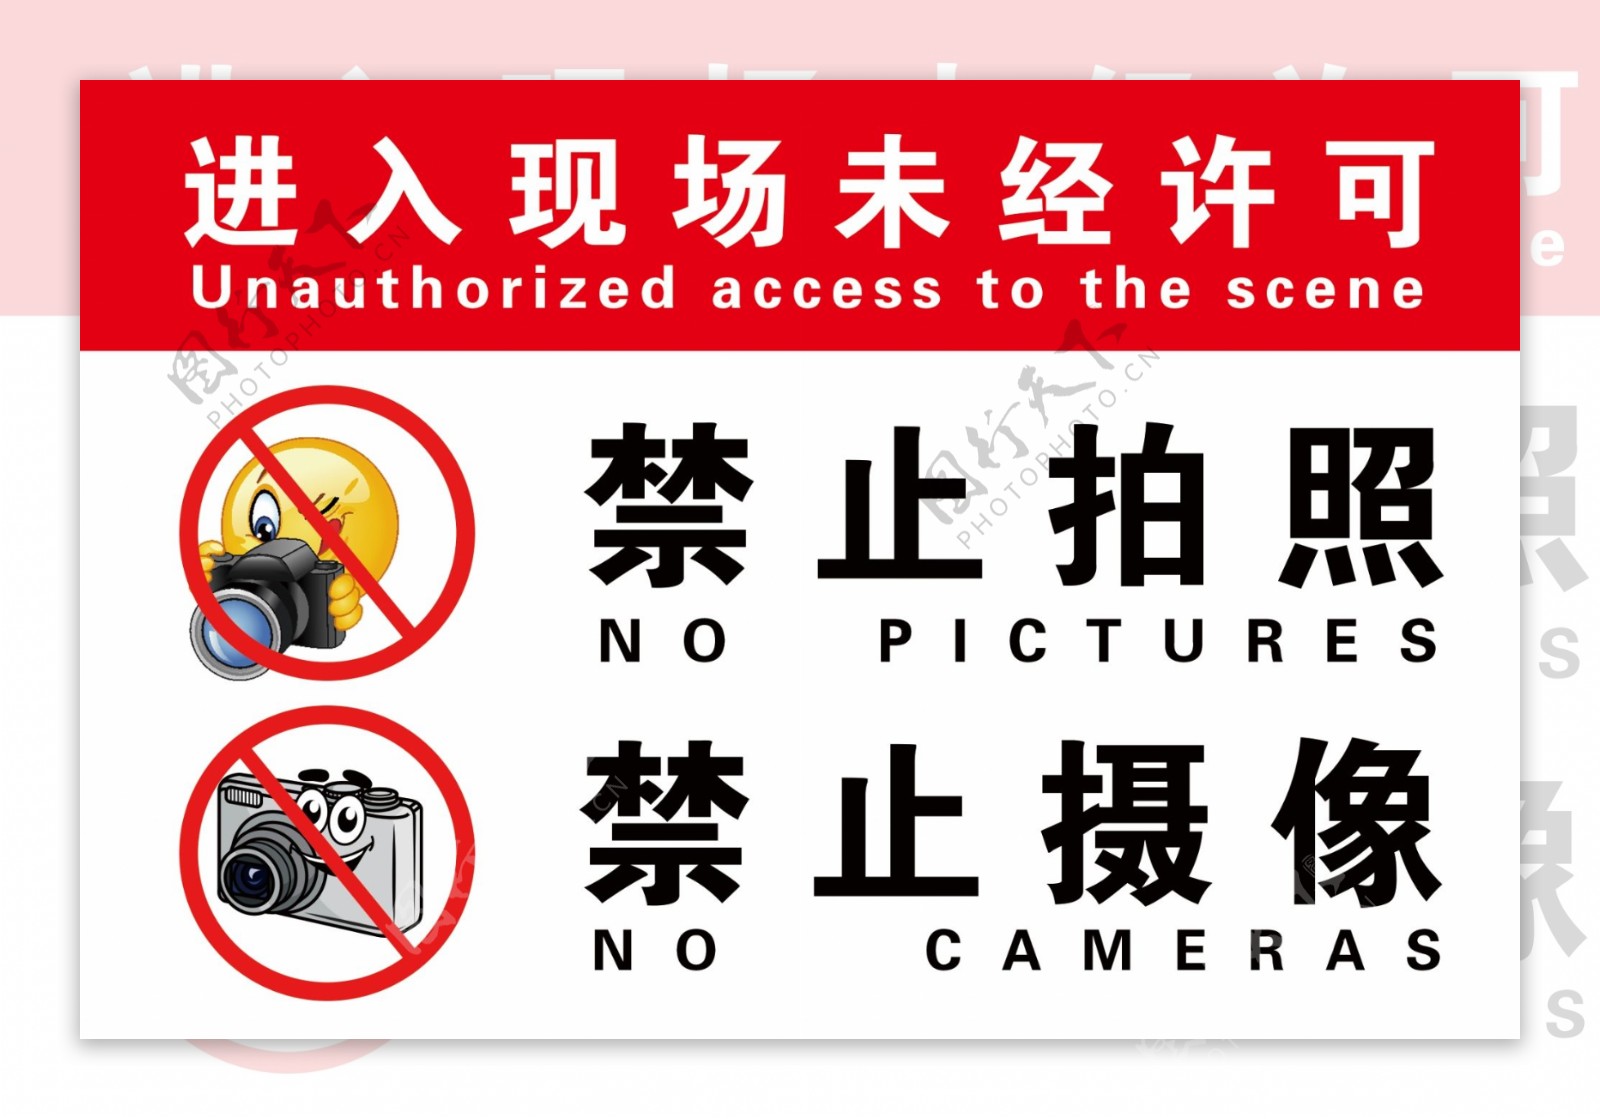 禁止拍照摄像